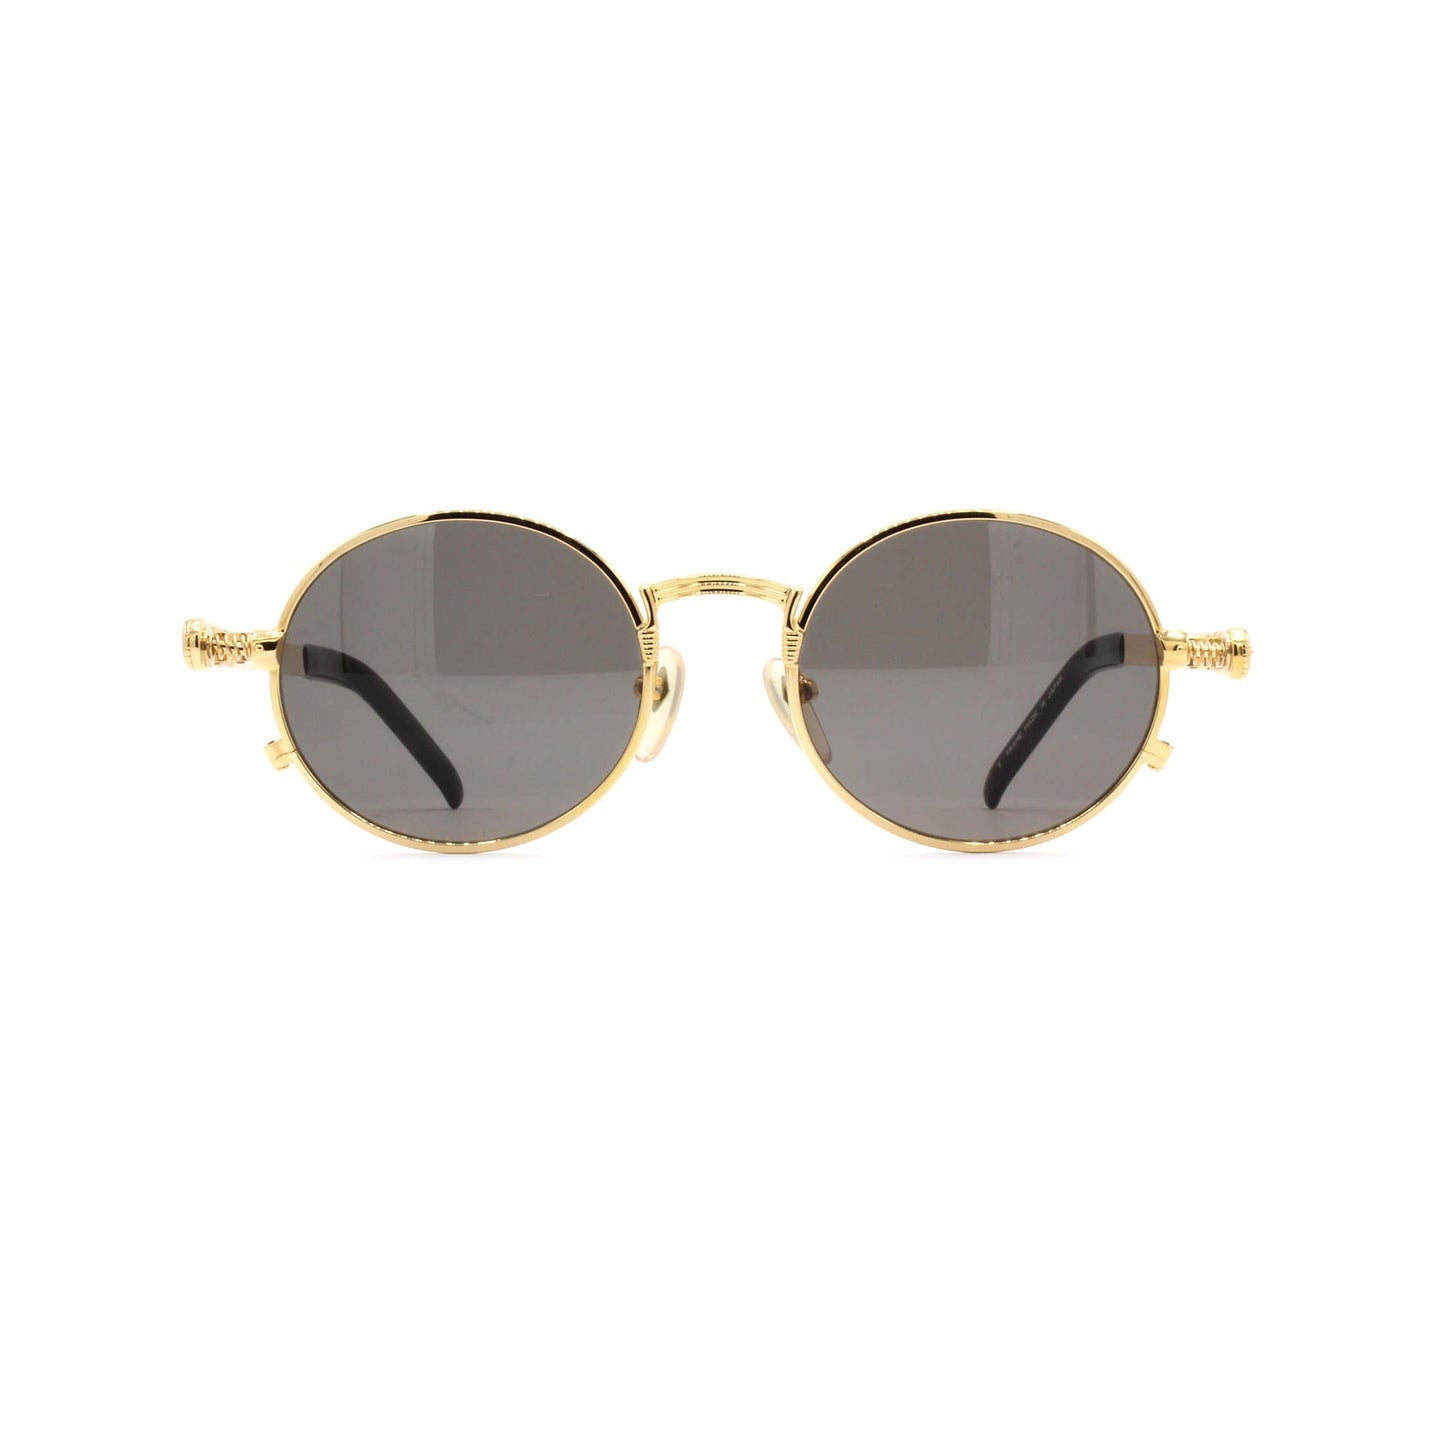 Gold Vintage Jean Paul Gaultier 56-4178 Sunglasses RSTKD Vintage